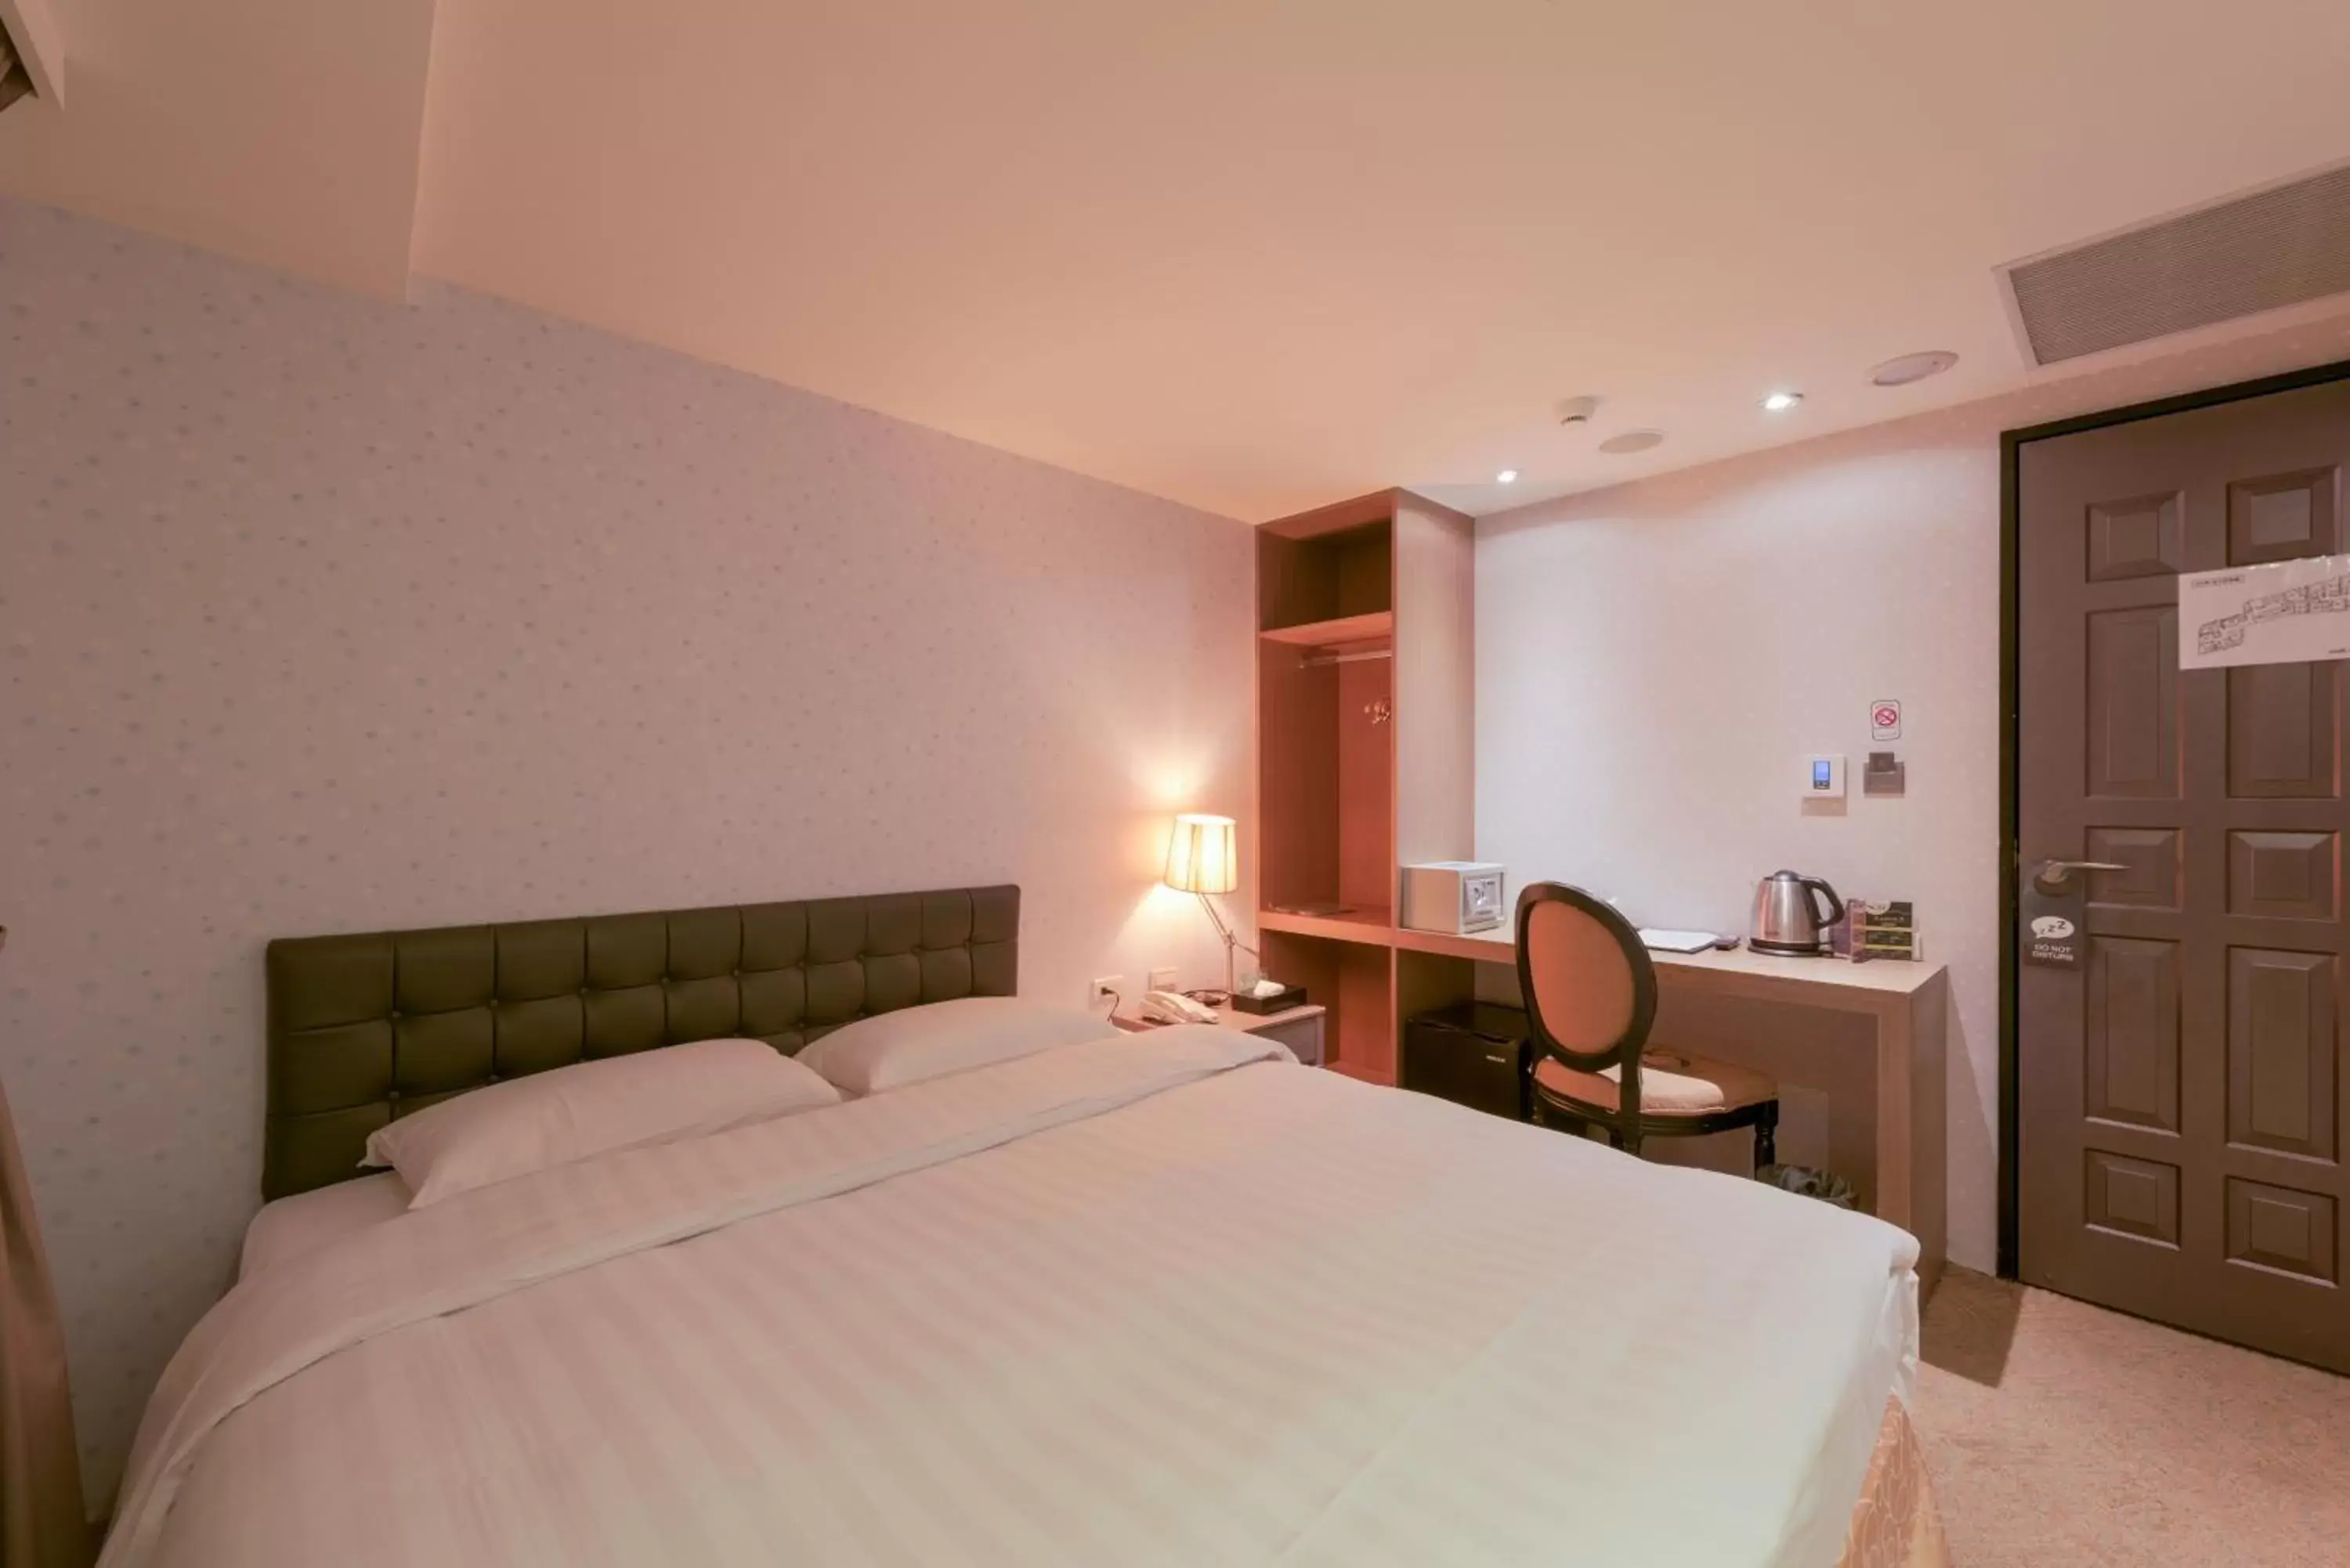 Bed in RF Hotel - Zhongxiao